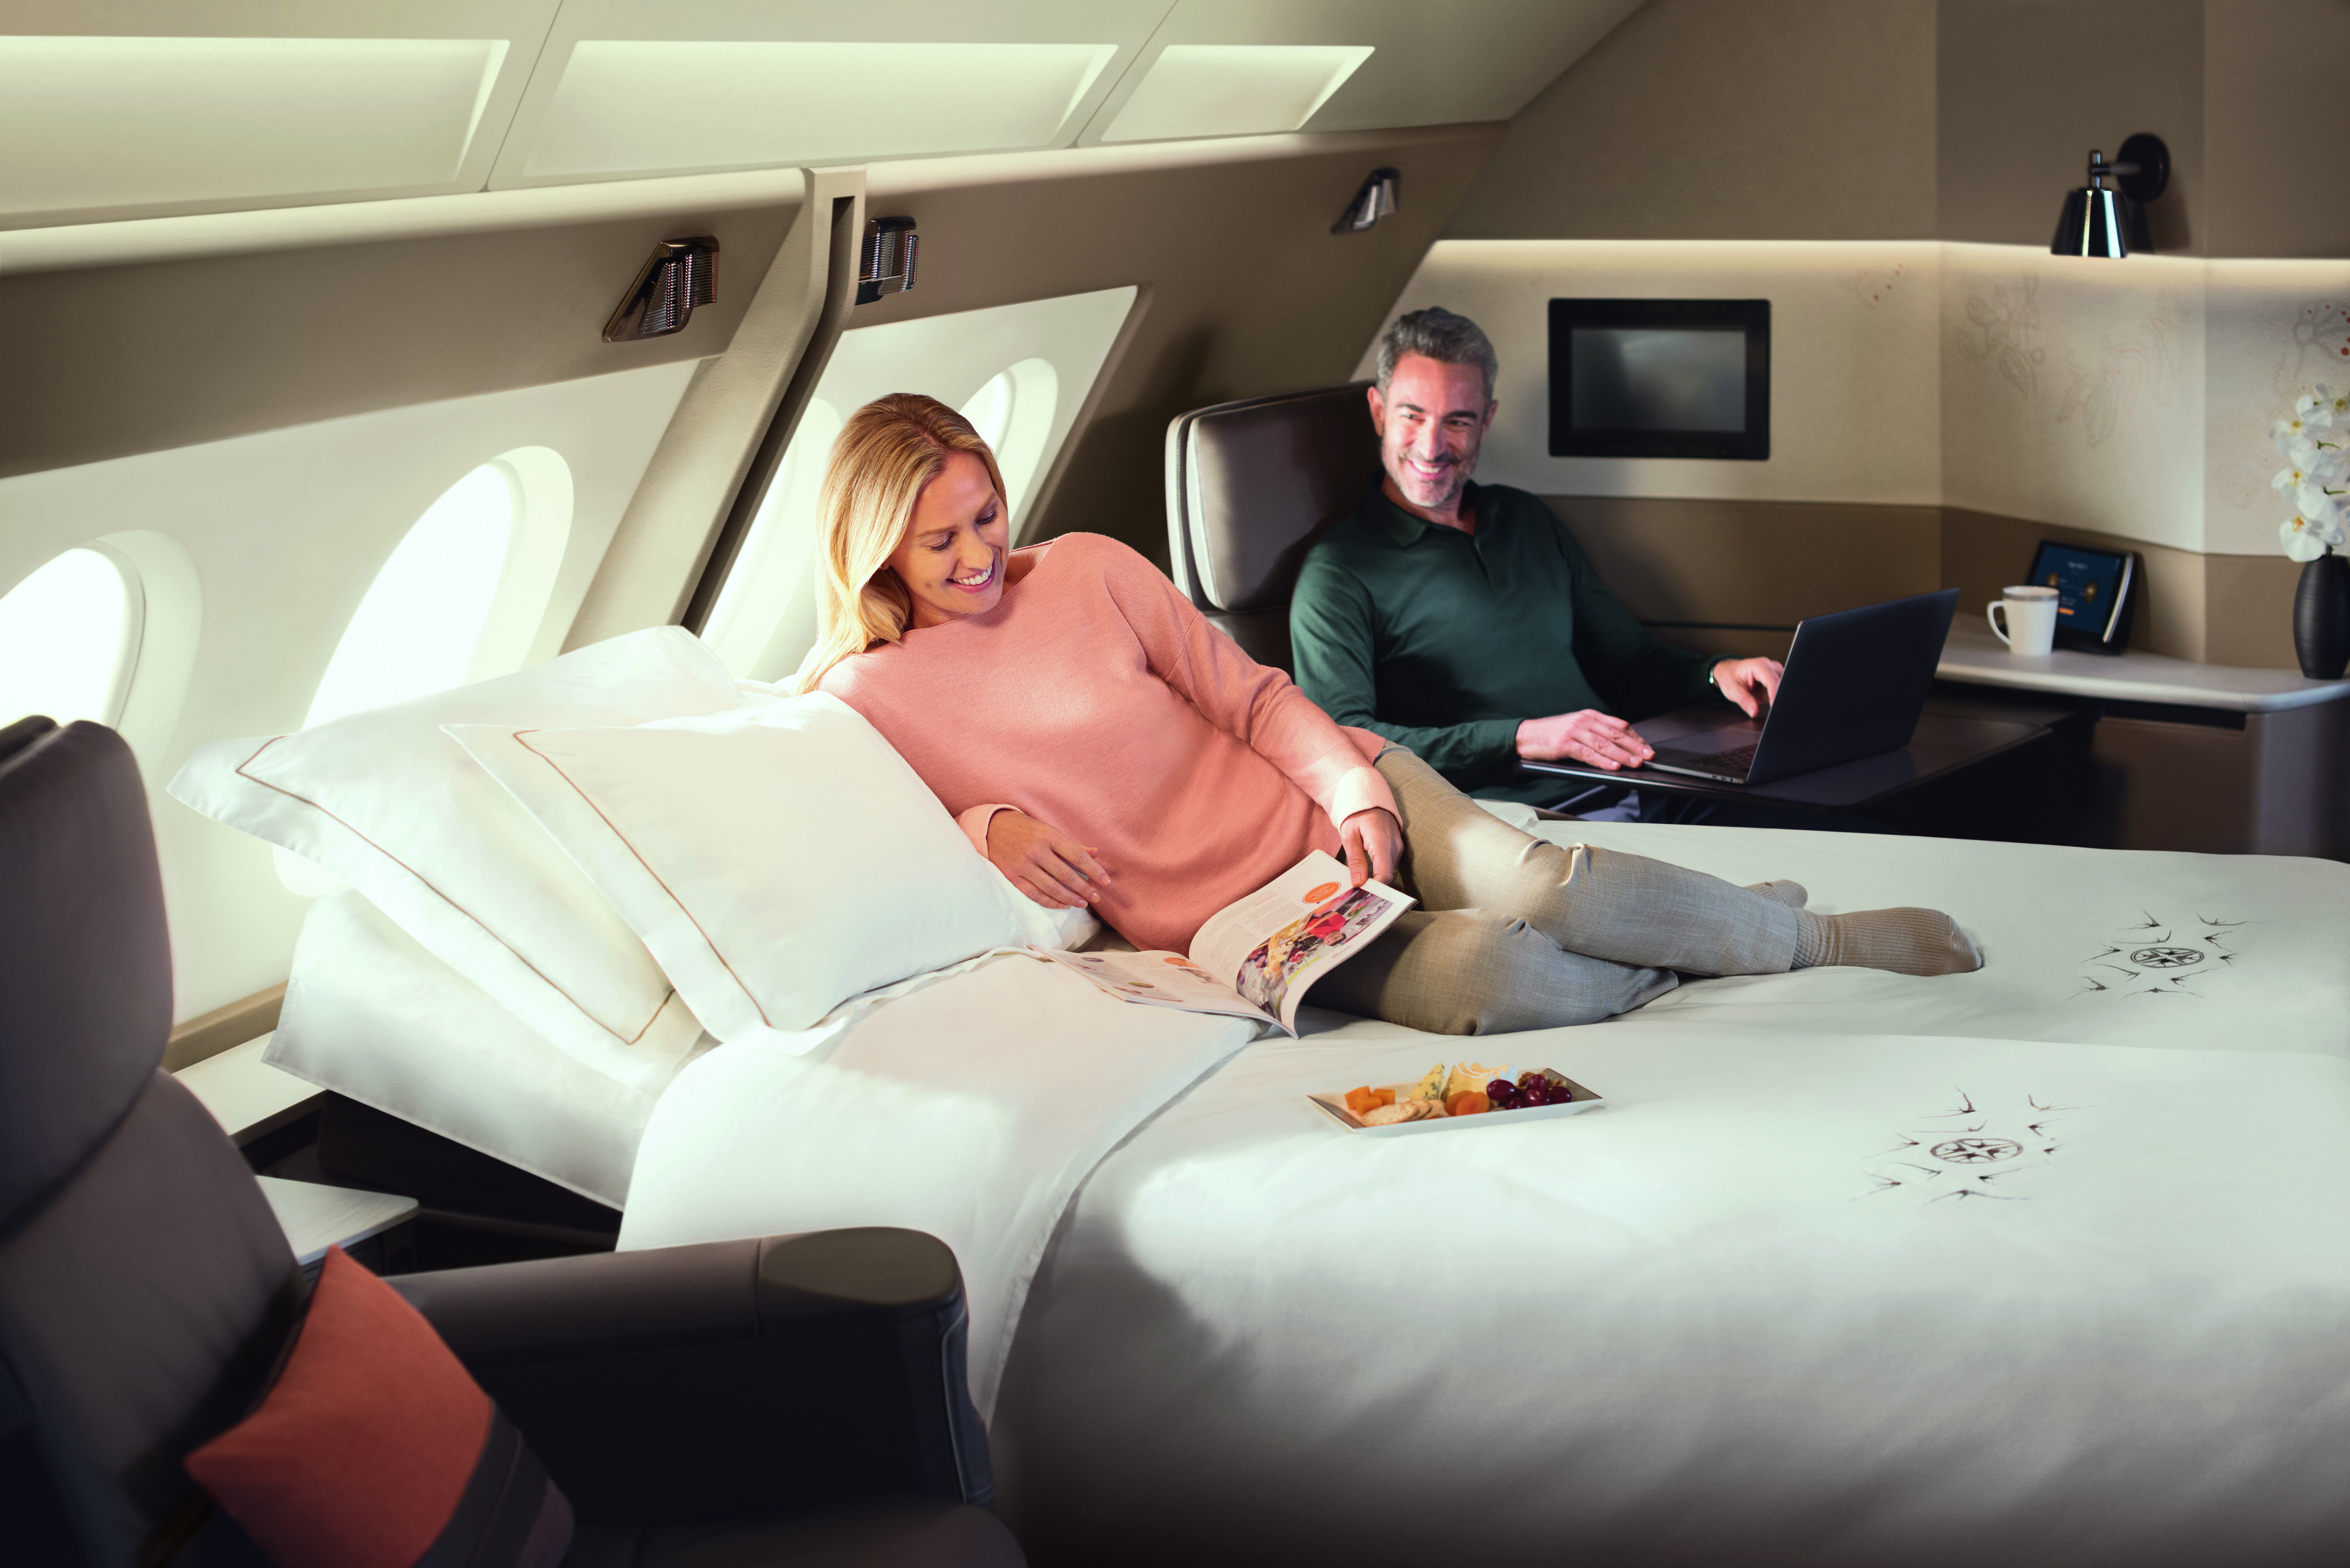 A nova primeira classe da Singapore Airlines oferece opções de suítes com cama de casal para quem vai viajar a dois. Foto: Divulgação/Singapore Airlines